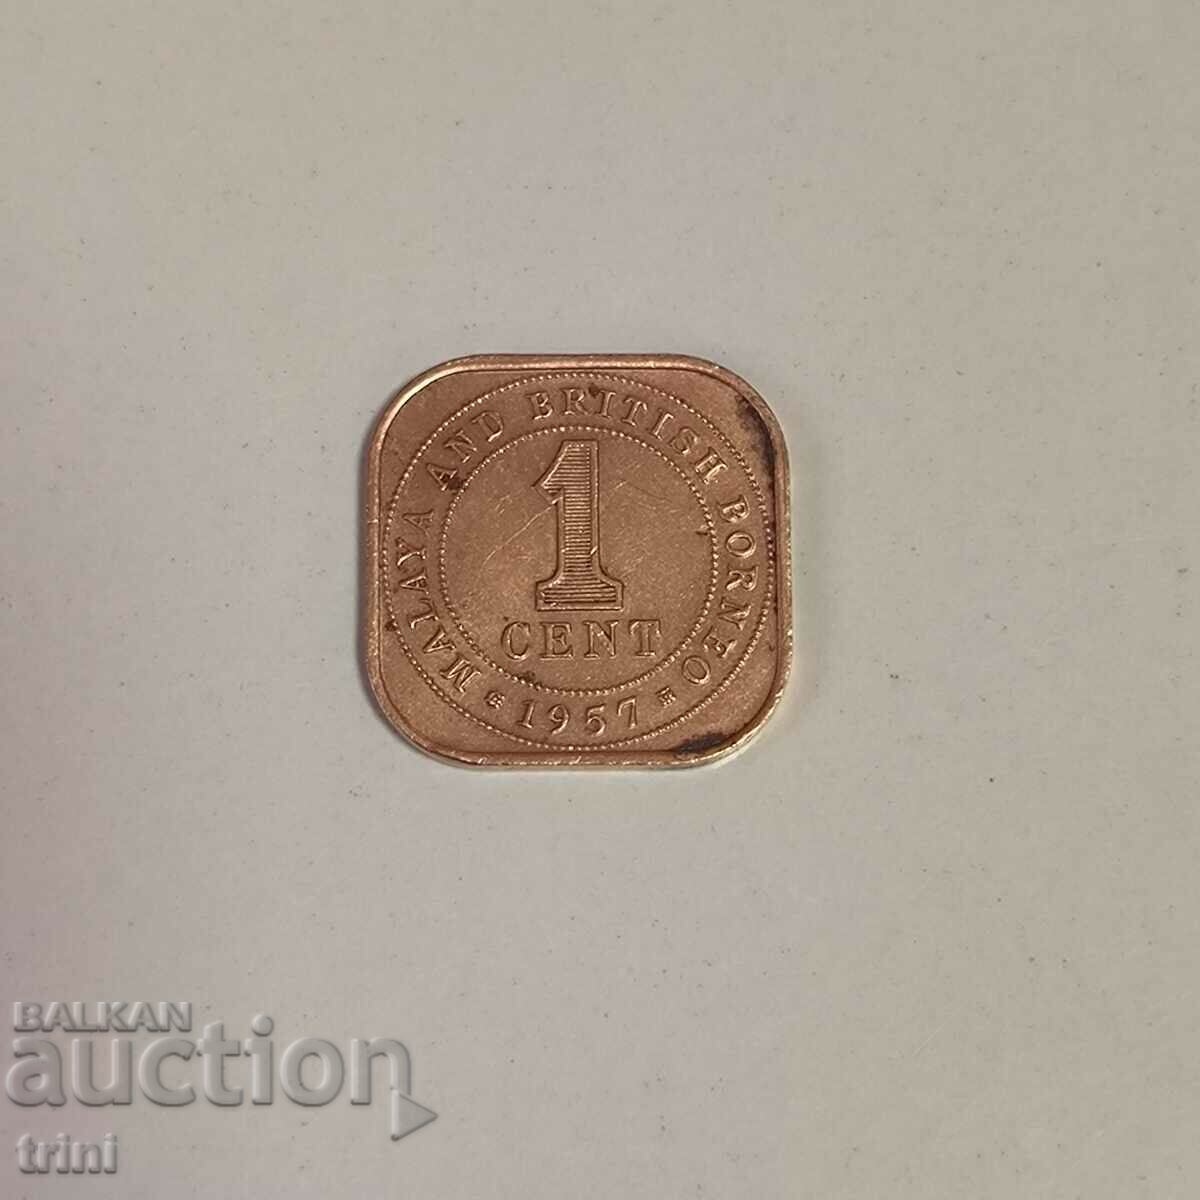 Malaya and British Borneo 1 cent 1957 year g77